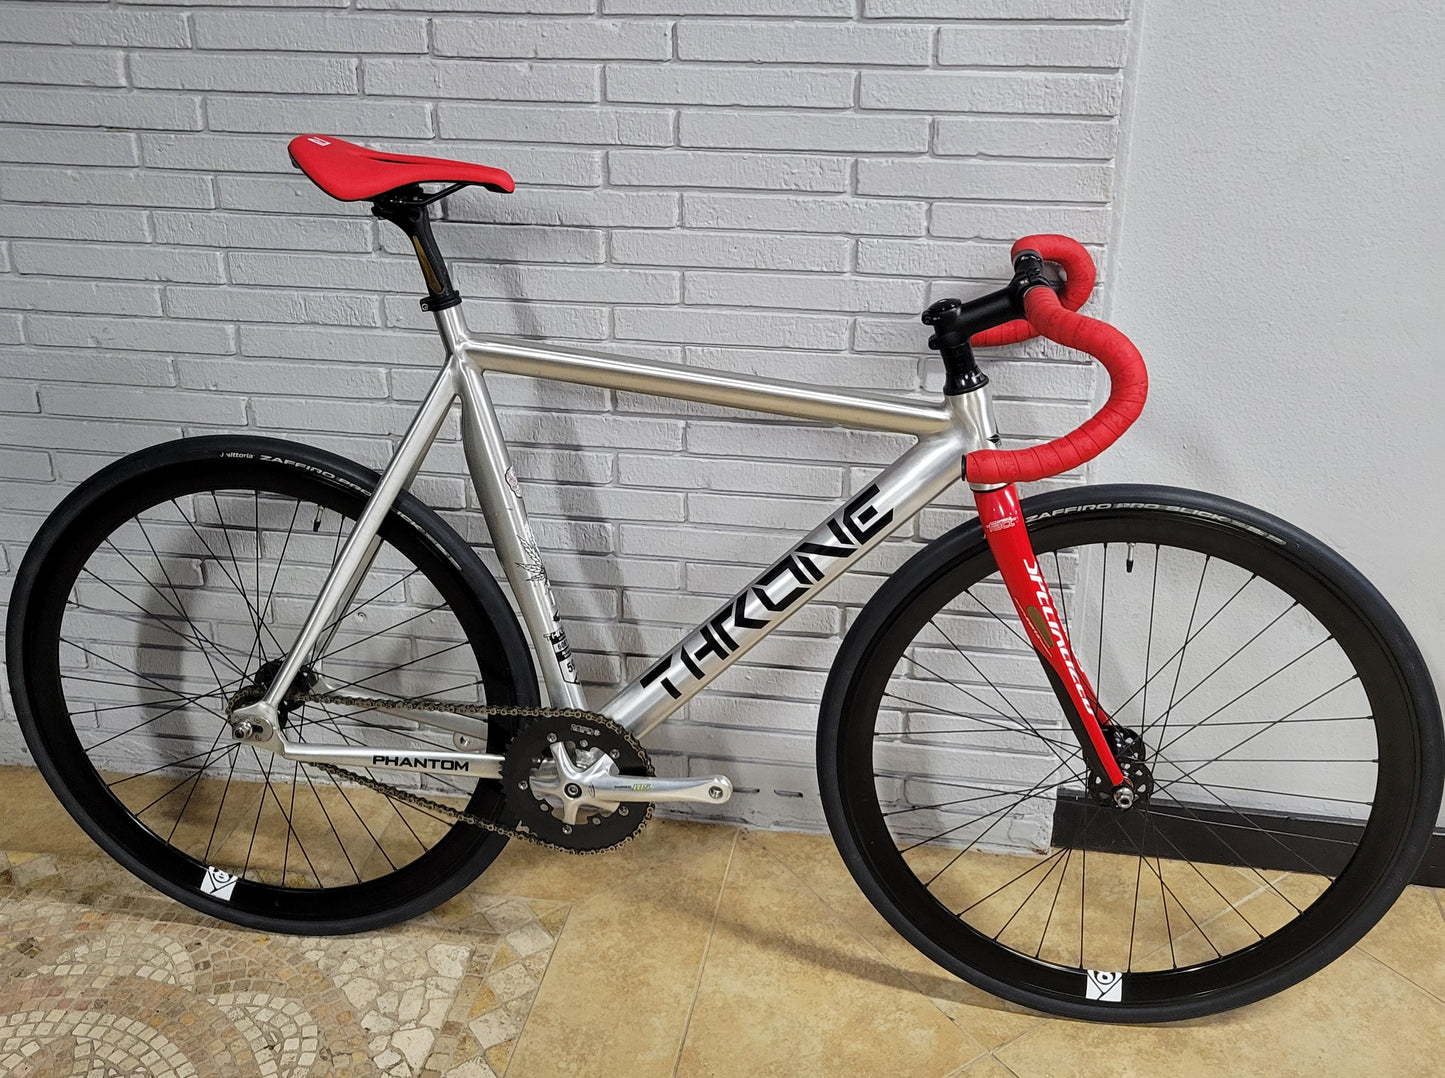 Throne Phantom Track Fixed Gear Bike (59cm XL)